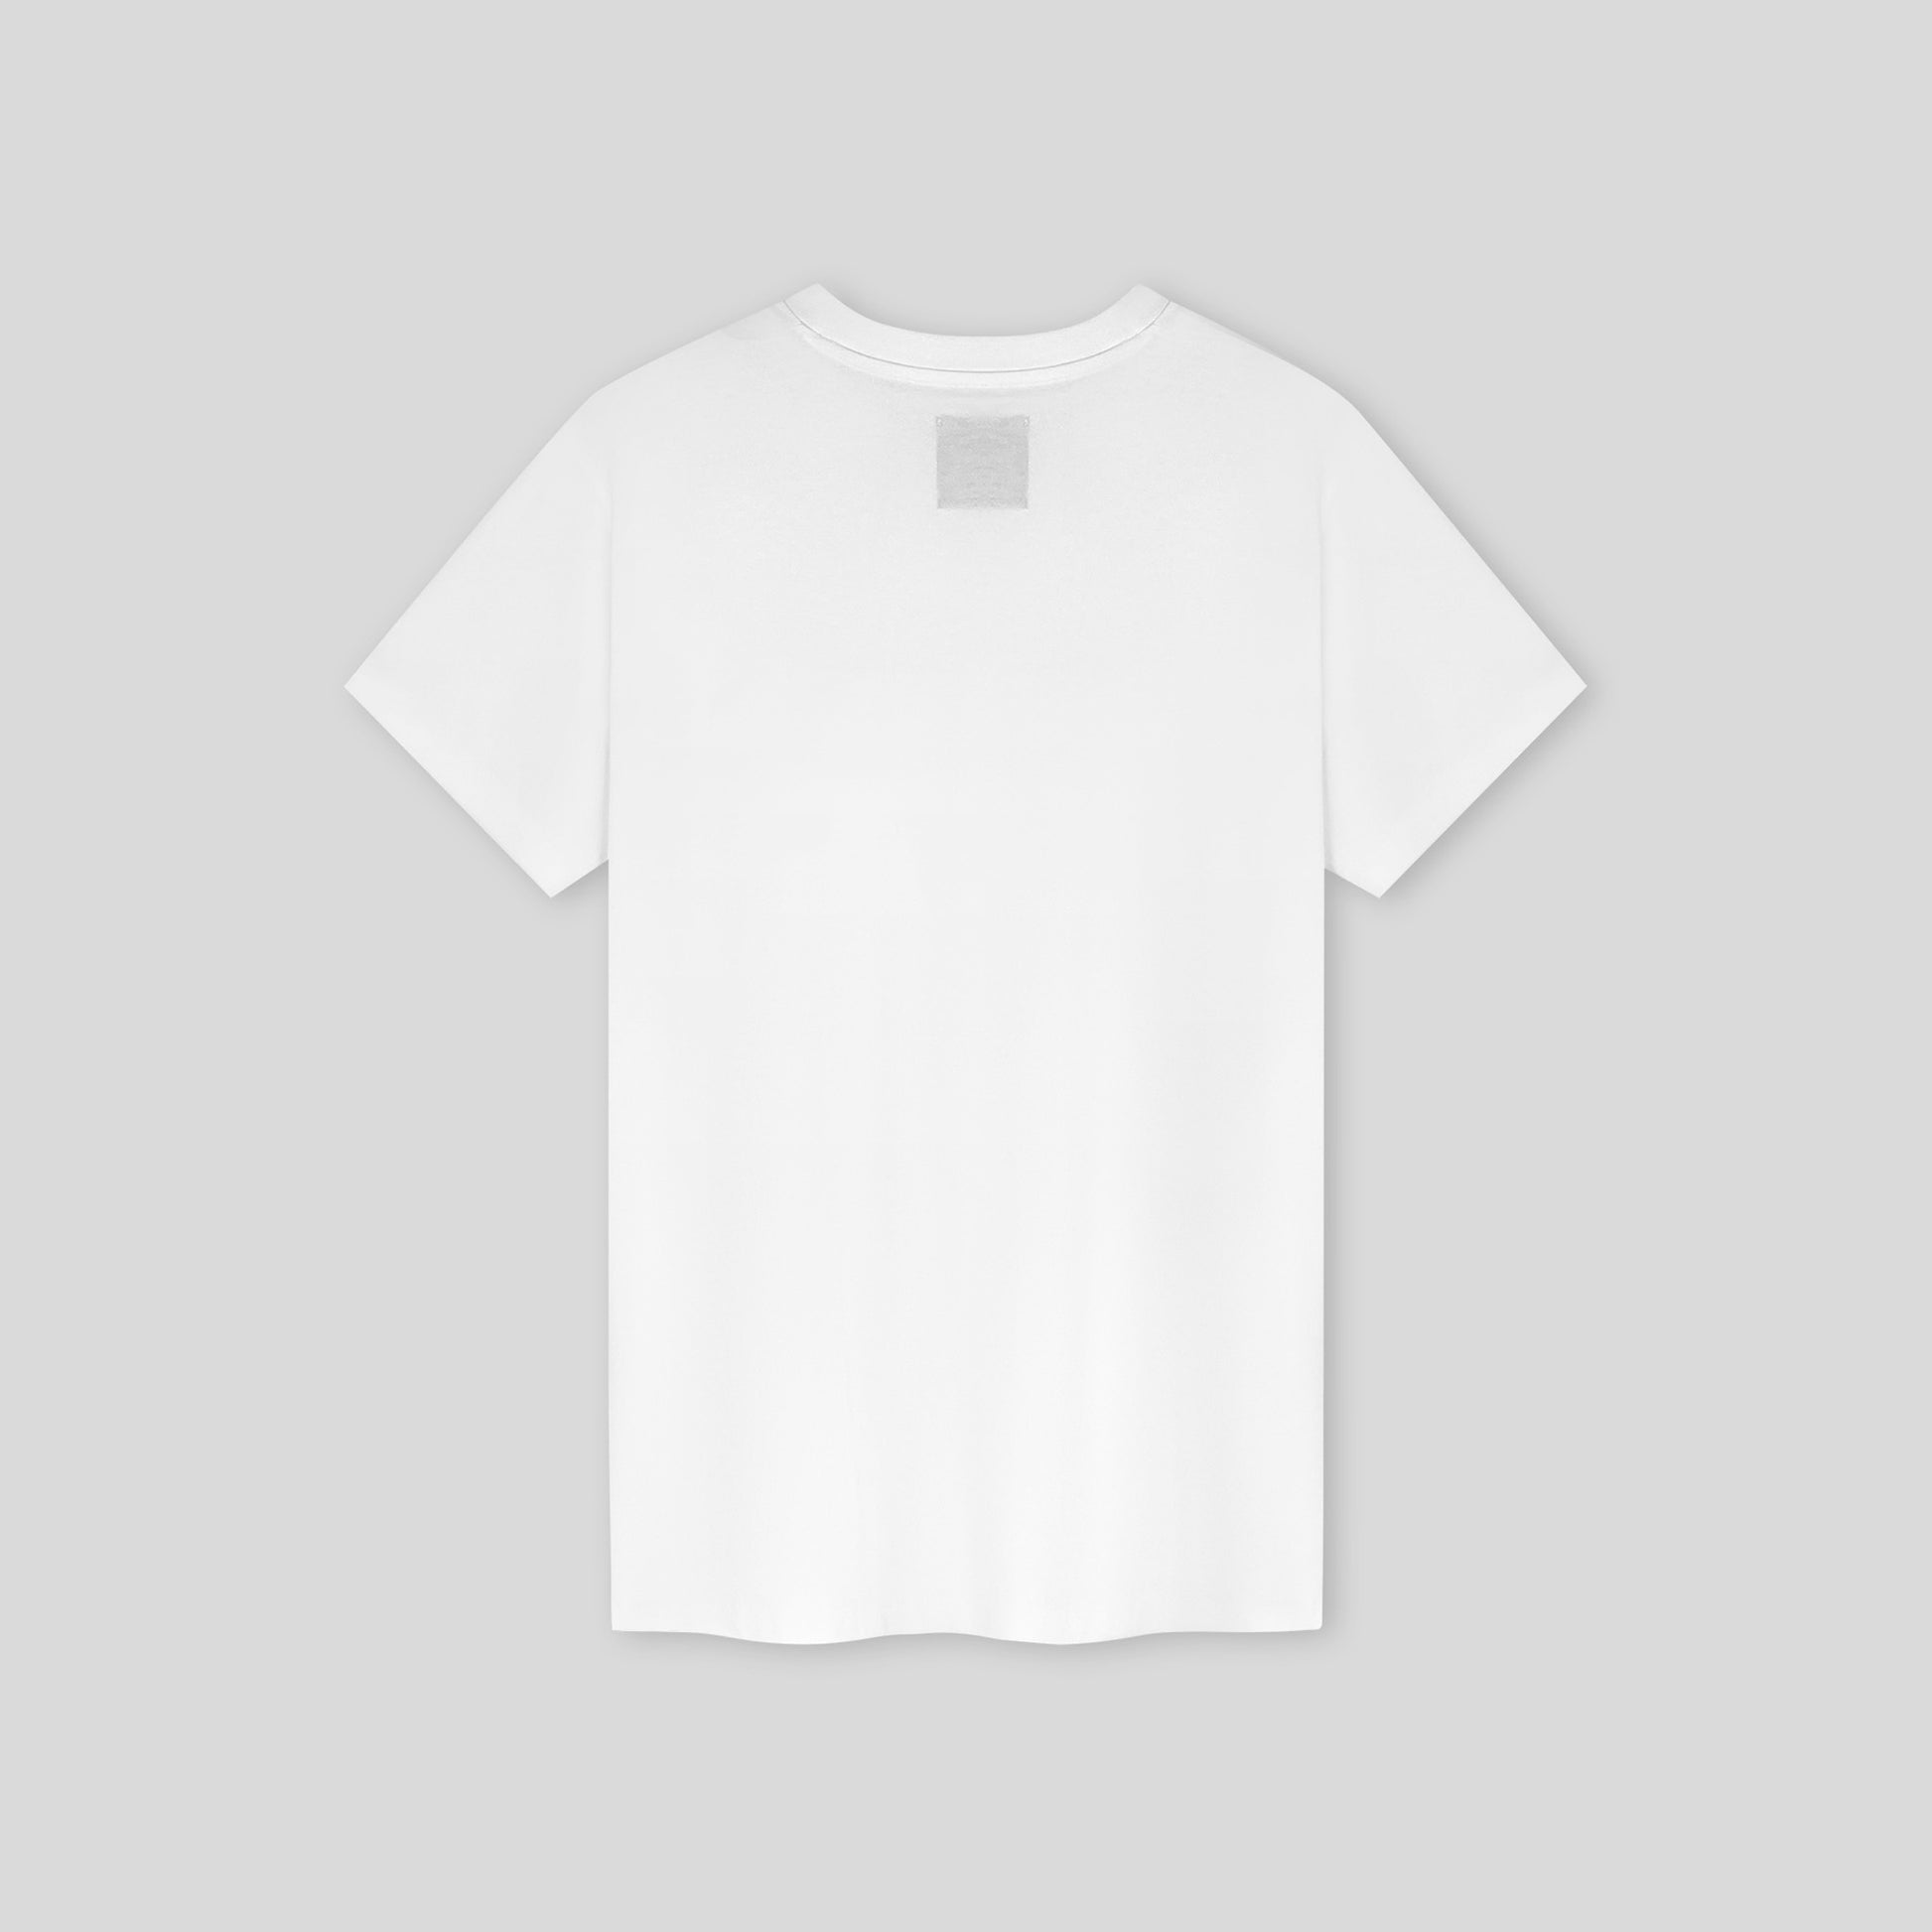 [Einzigartige T-Shirts in Premium-Qualität online]-Palmont - Official Site®